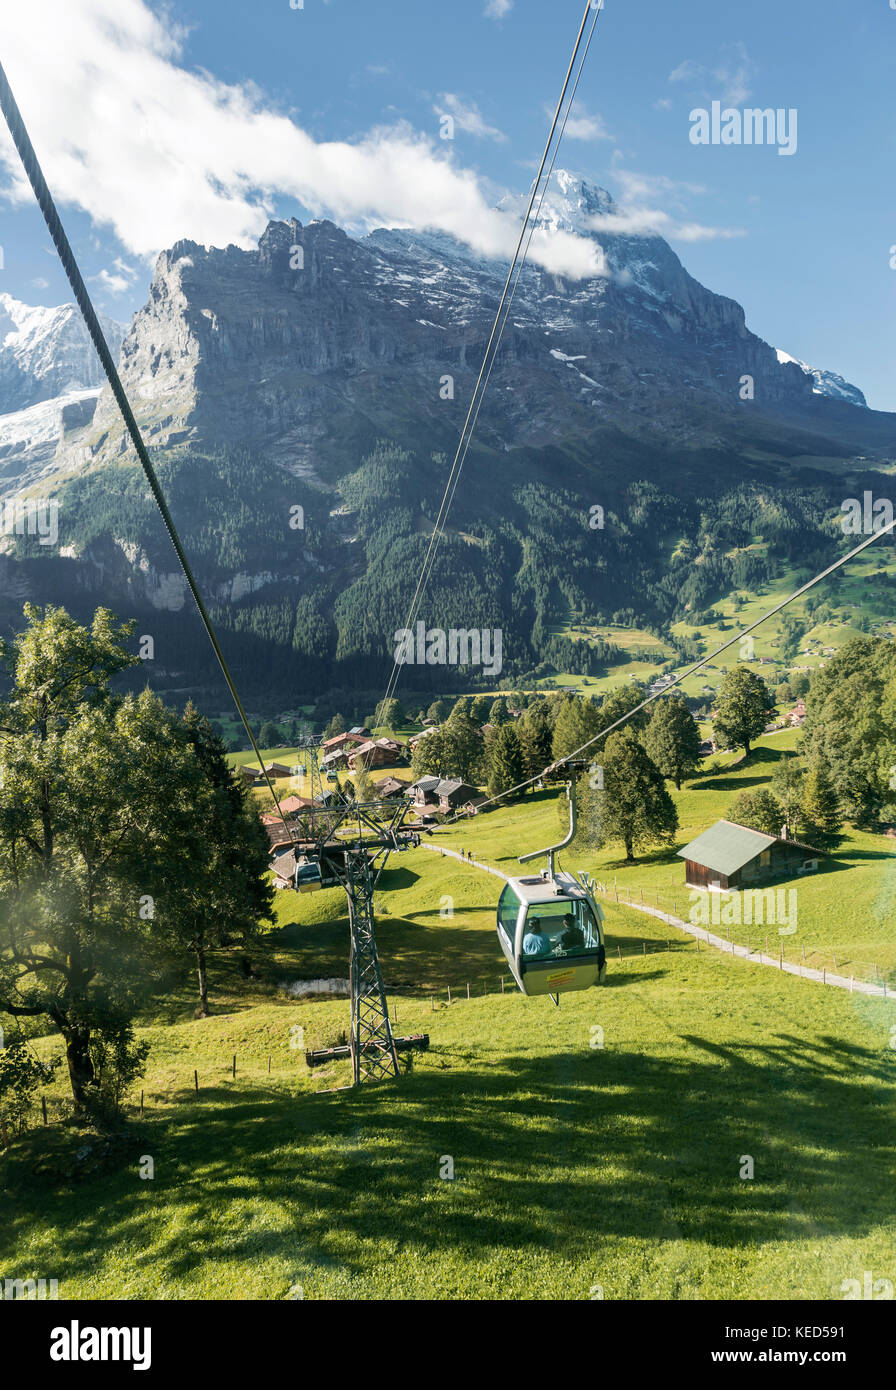 Ferrovia di montagna per Grindelwald prima, neve coperta di parete nord dell'Eiger, Eiger, Mönch, Jungfrau, Grindelwald, Svizzera Foto Stock